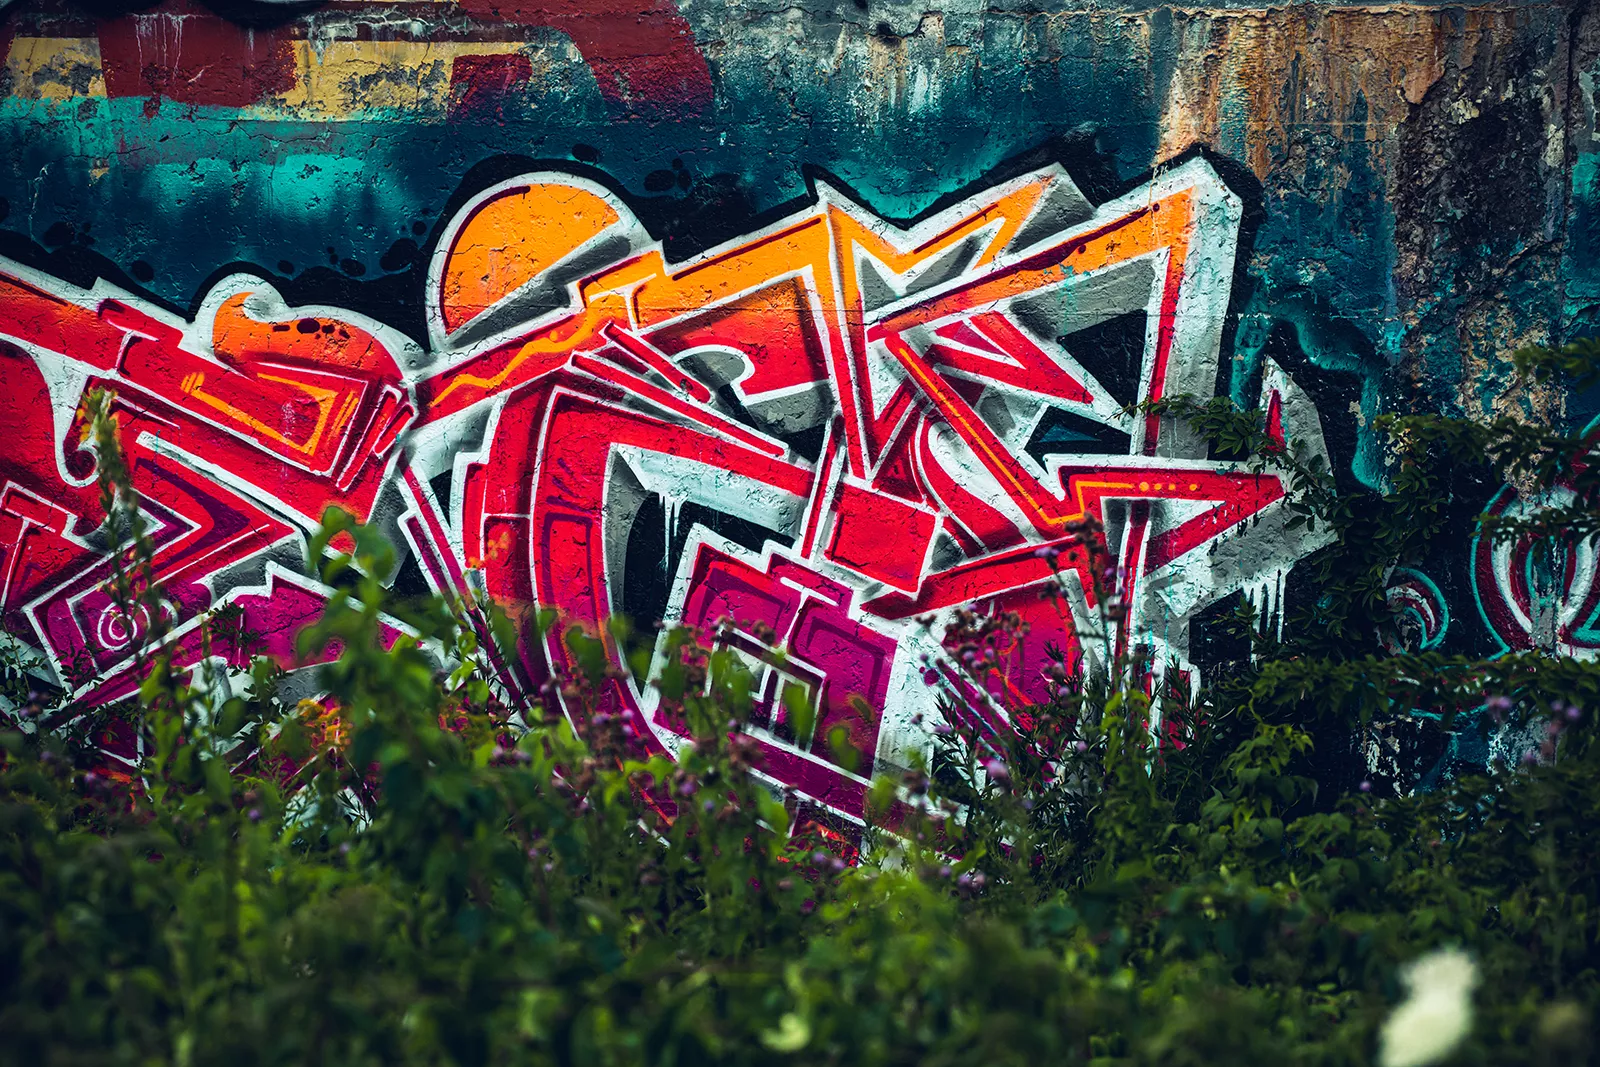 Battery Steele Graffiti Wall 1600